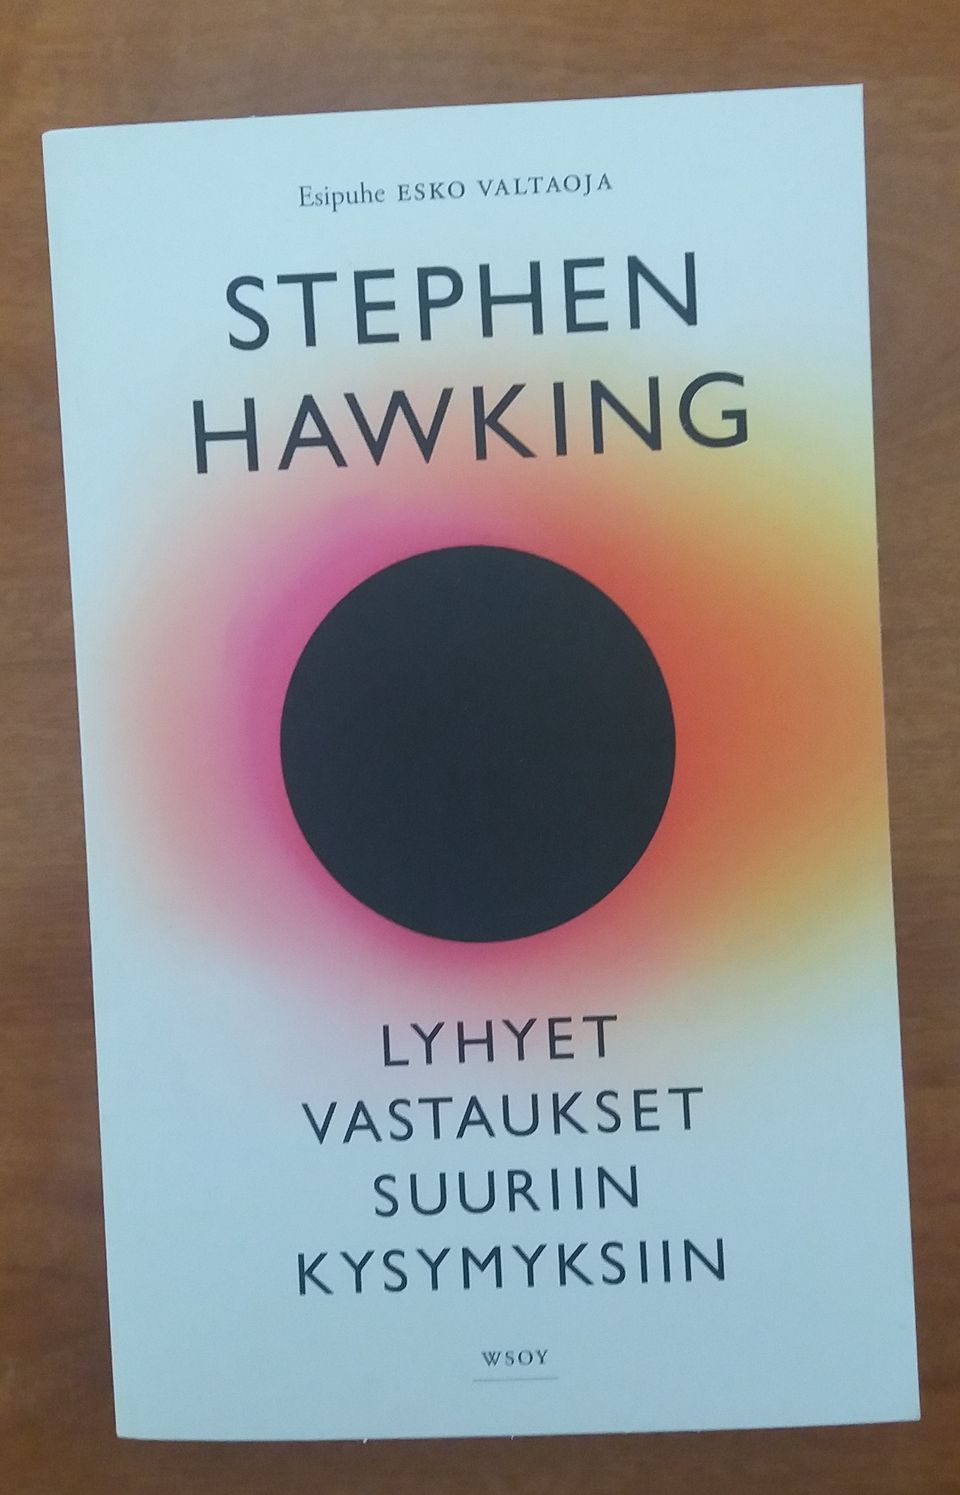 Stephen Hawking LYHYET VASTAUKSET SUURIIN KYSYMYKSIIN Wsoy 2019